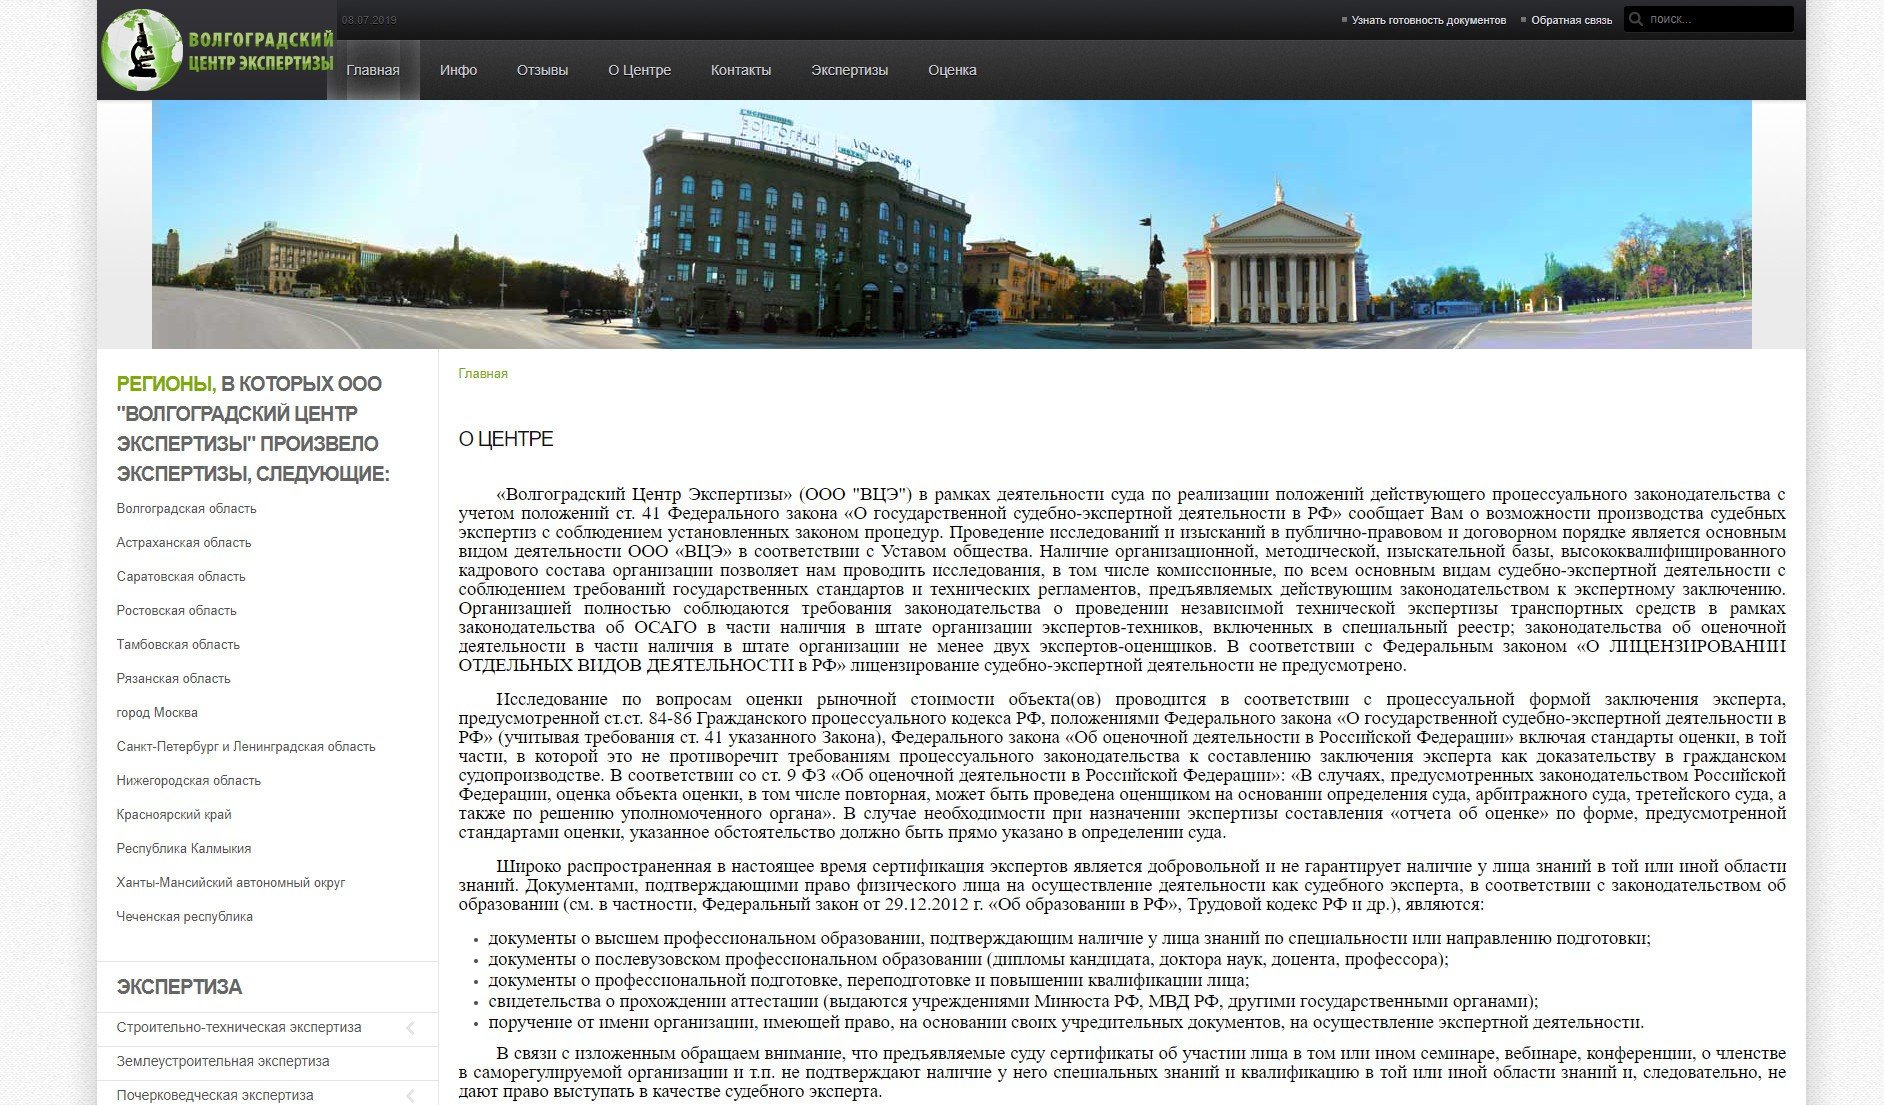 Создание сайта Волгоградского Центра Экспертизы (Волгоград)